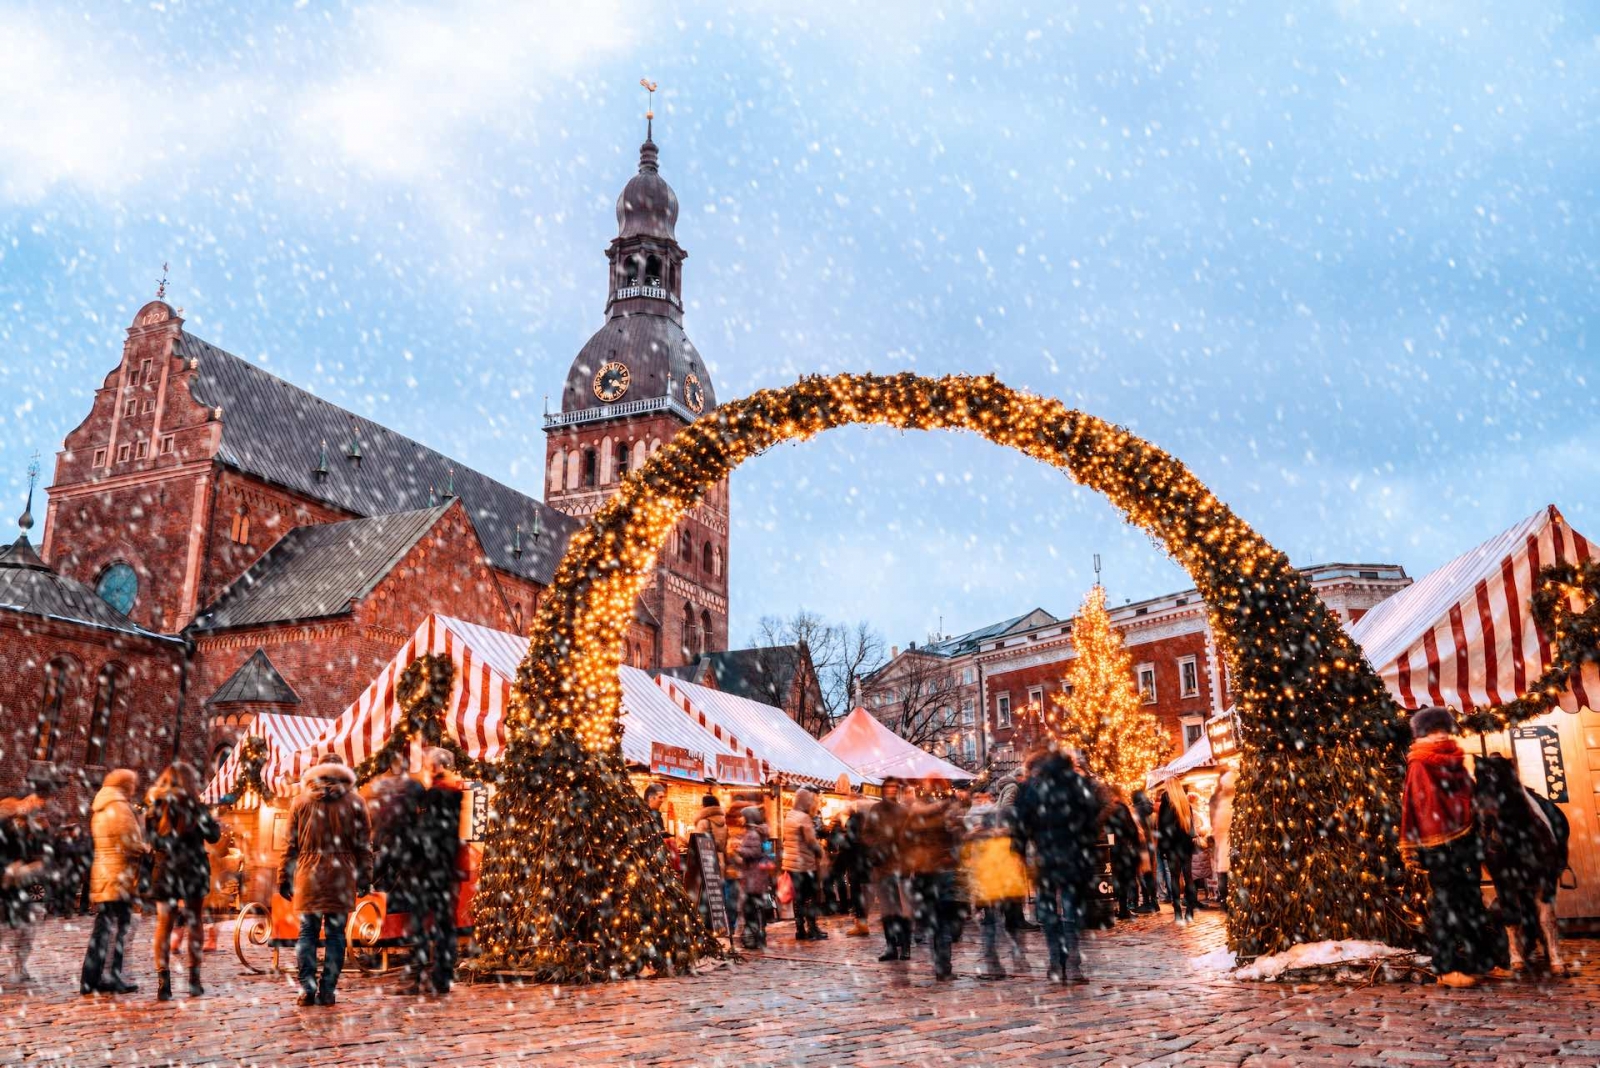 Mercatino di Natale e l'albero di Natale principale situato nella piazza del Duomo nella vecchia Riga, in Lettonia